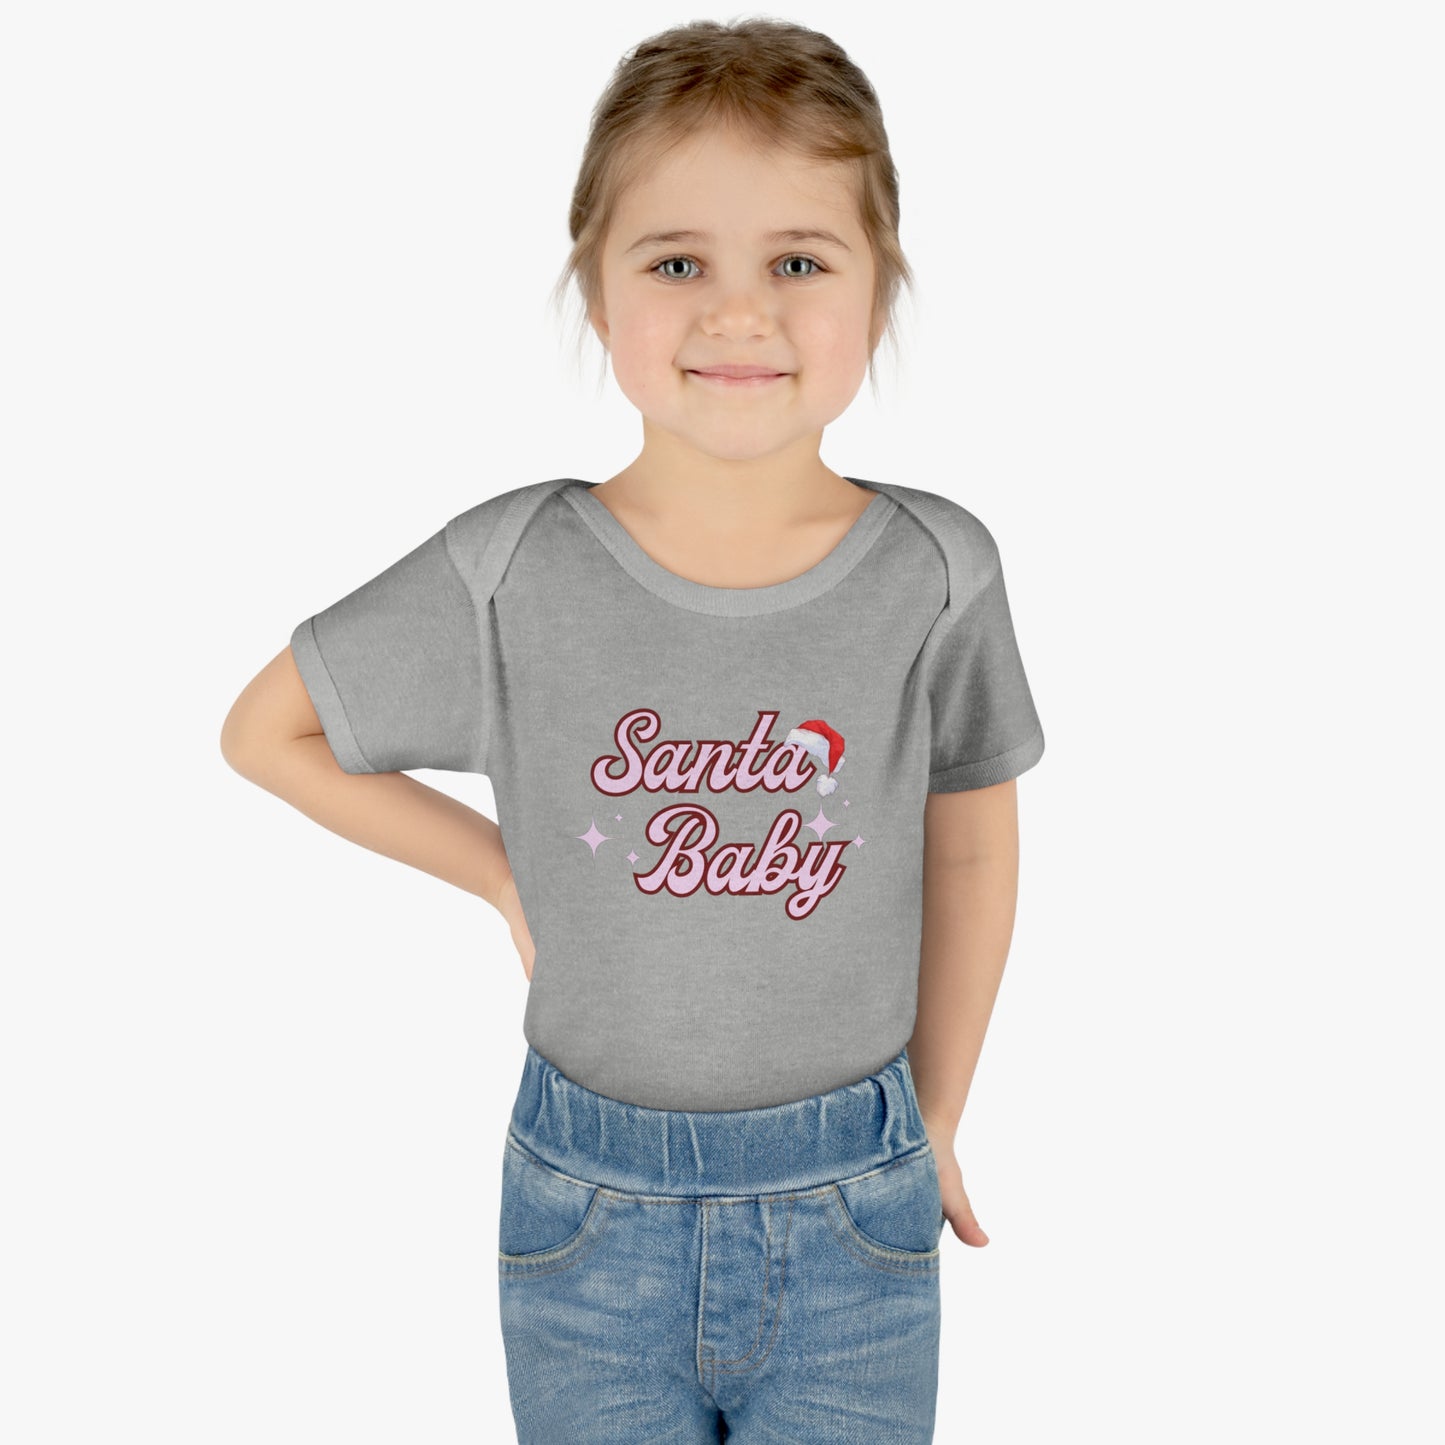 Santa Baby Infant Baby Rib Bodysuit